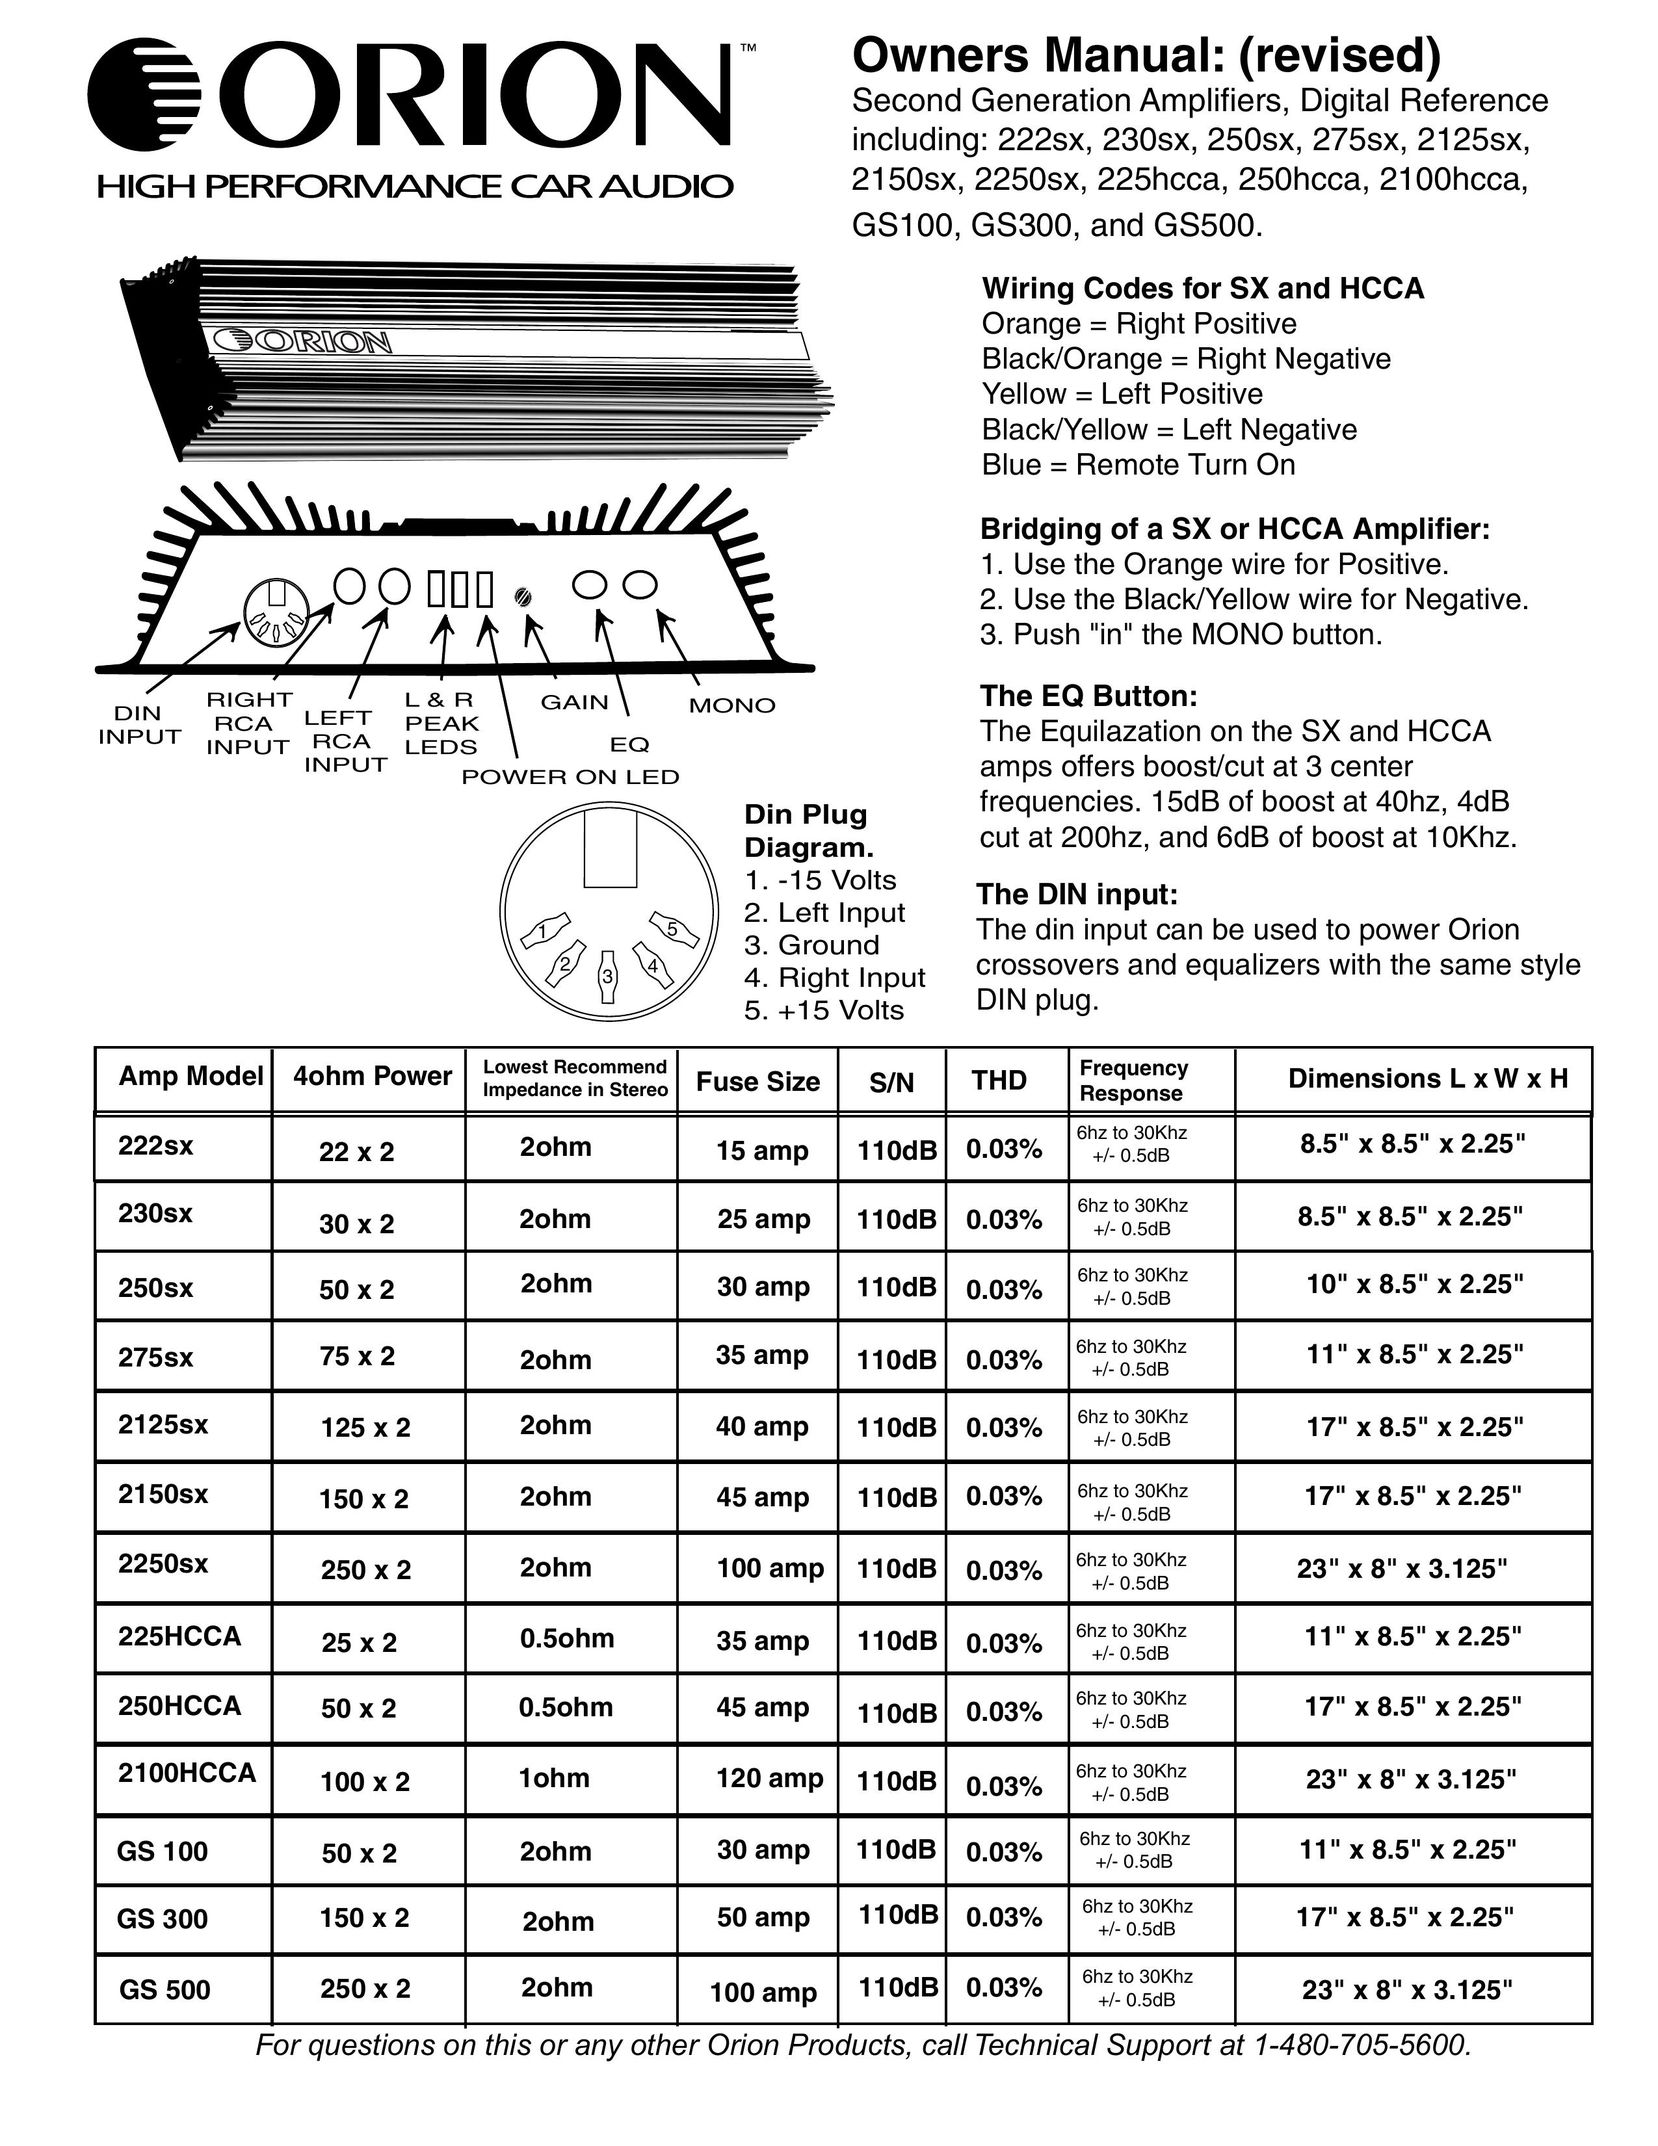 Orion Car Audio 250HCCA Car Amplifier User Manual